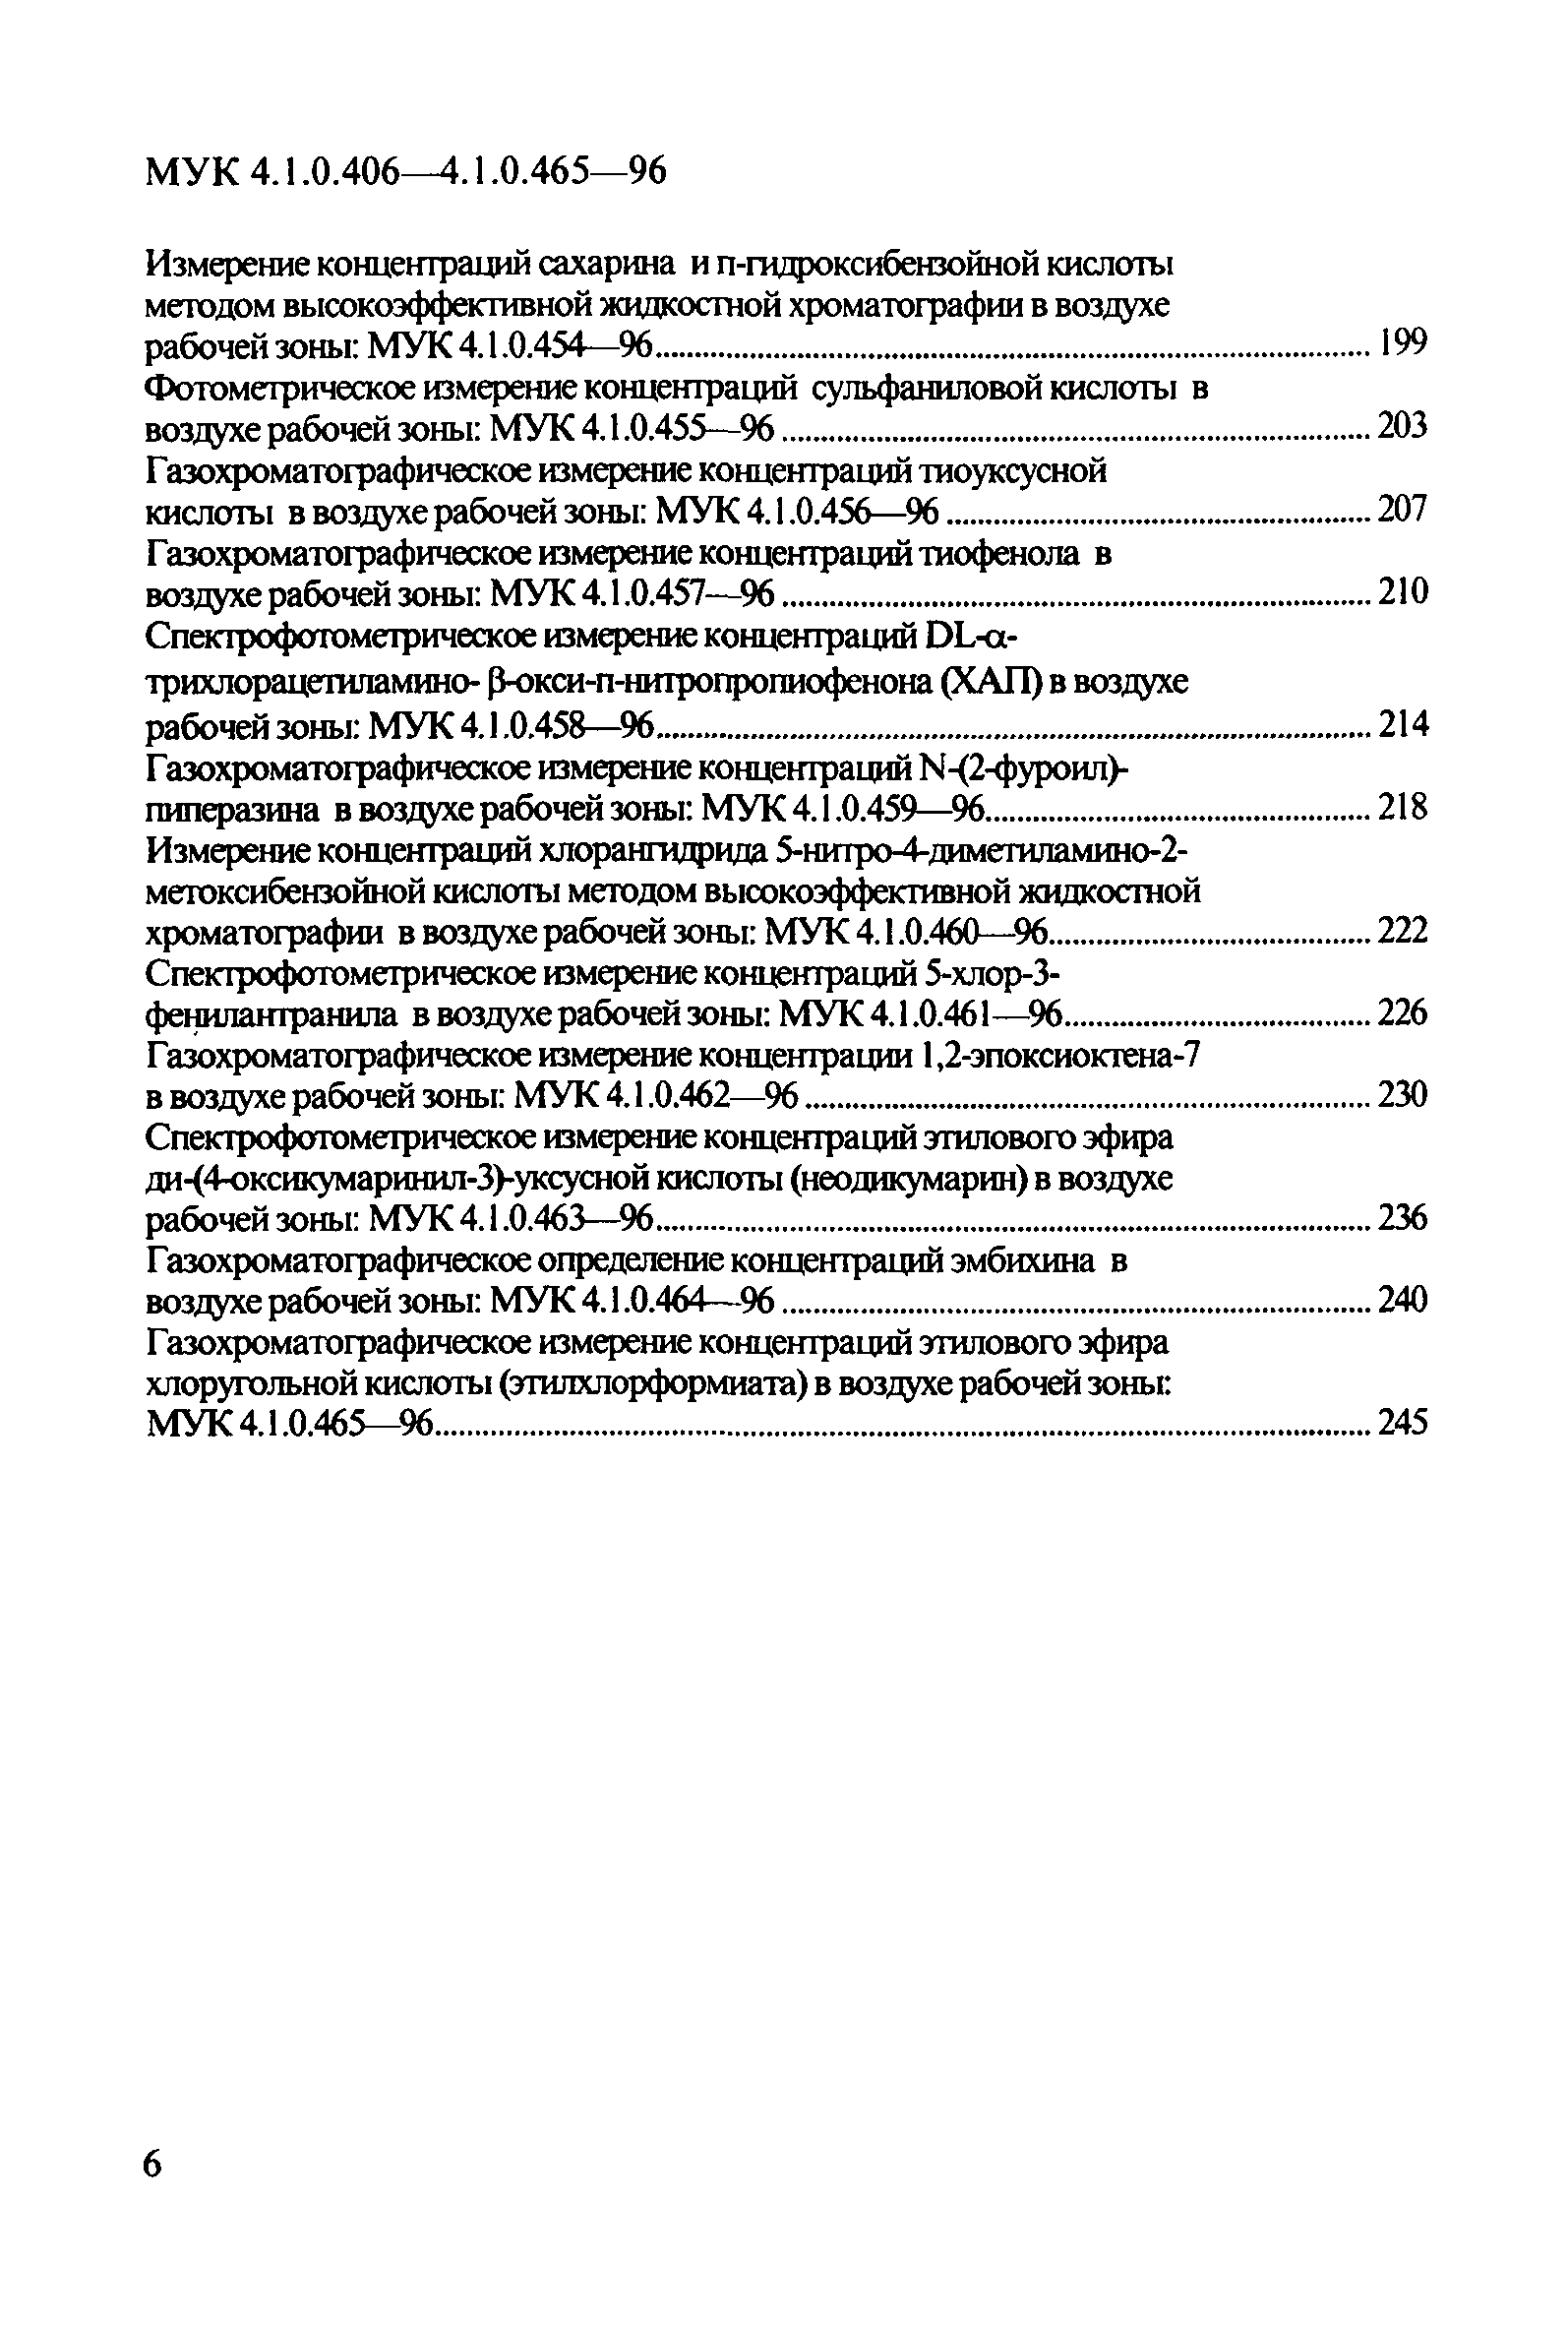 МУК 4.1.0.431-96